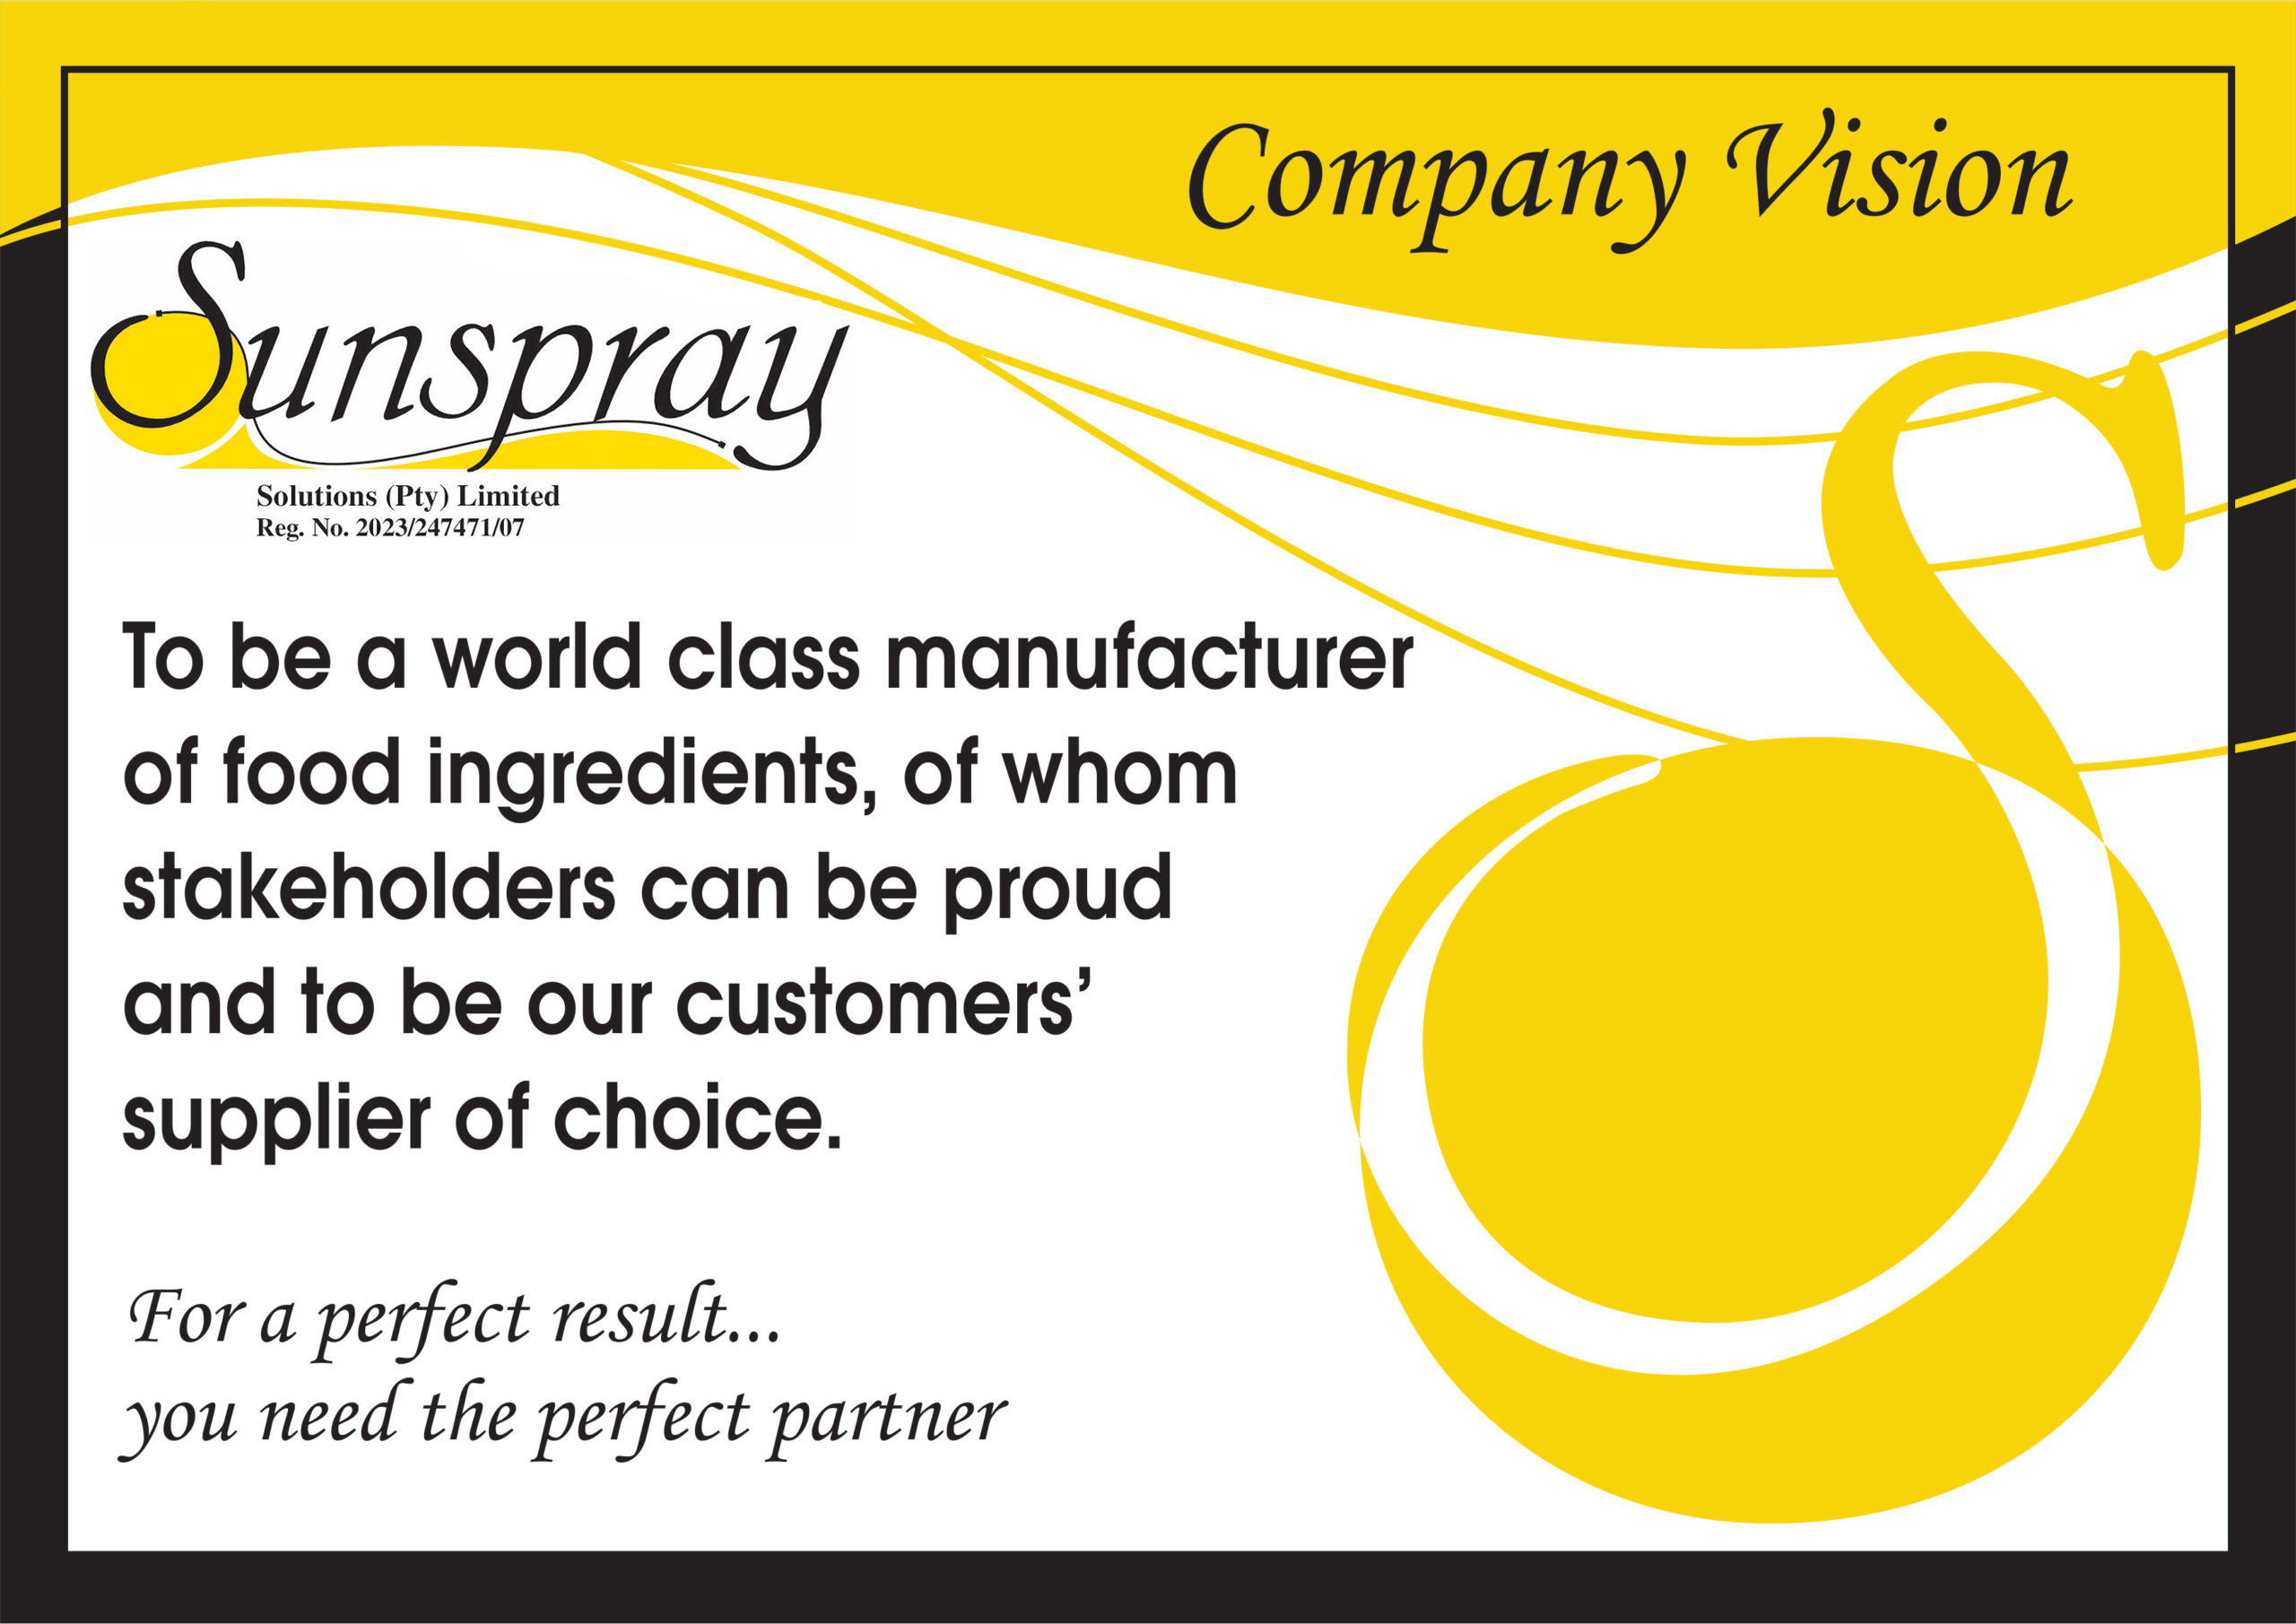 Sunspray-Company-Vision